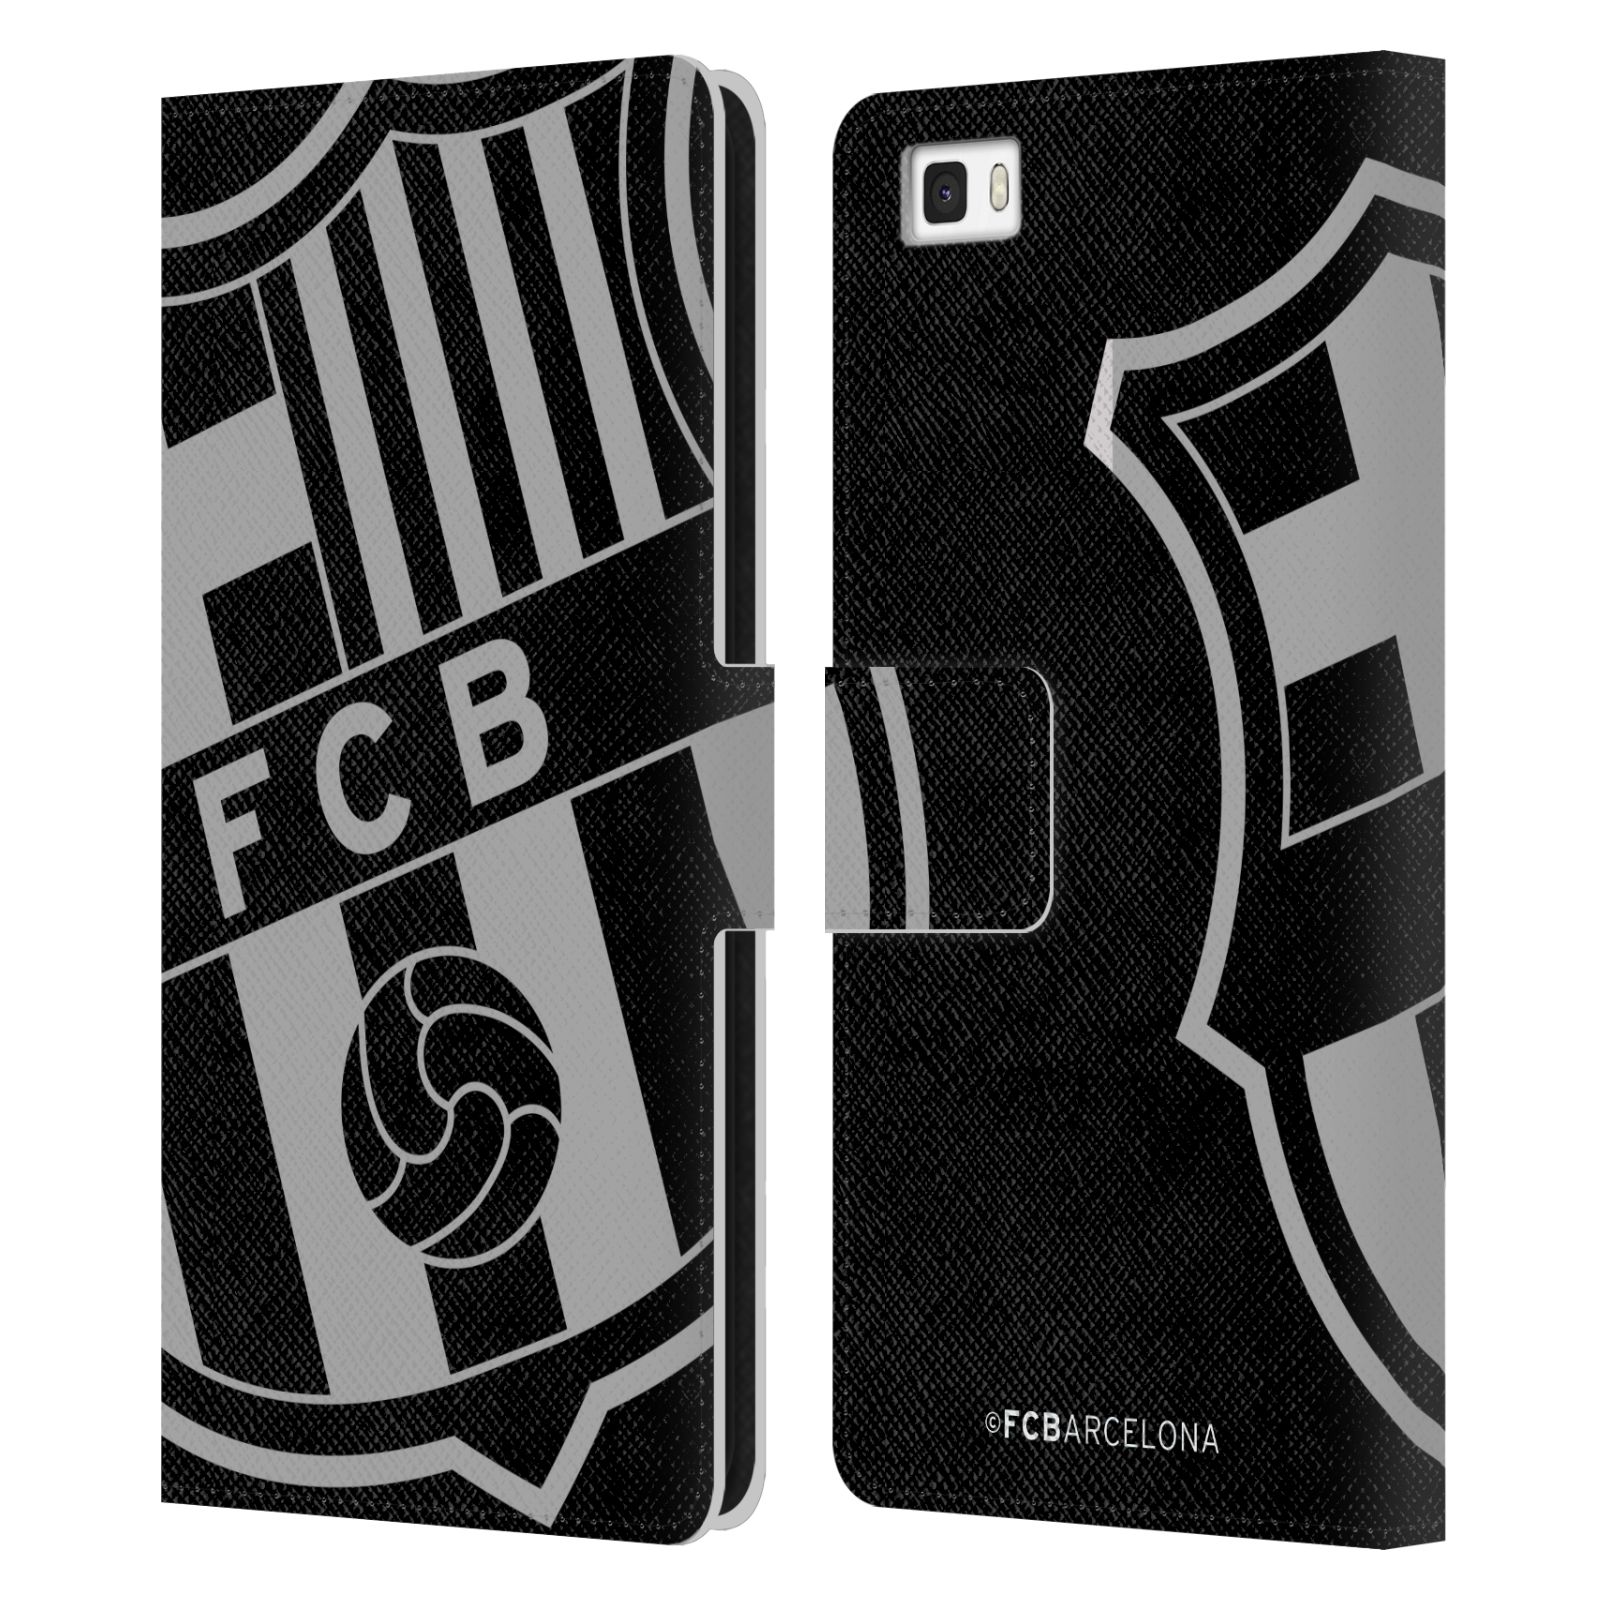 Pouzdro na mobil Huawei P8 LITE - HEAD CASE - FC Barcelona - černošedé logo